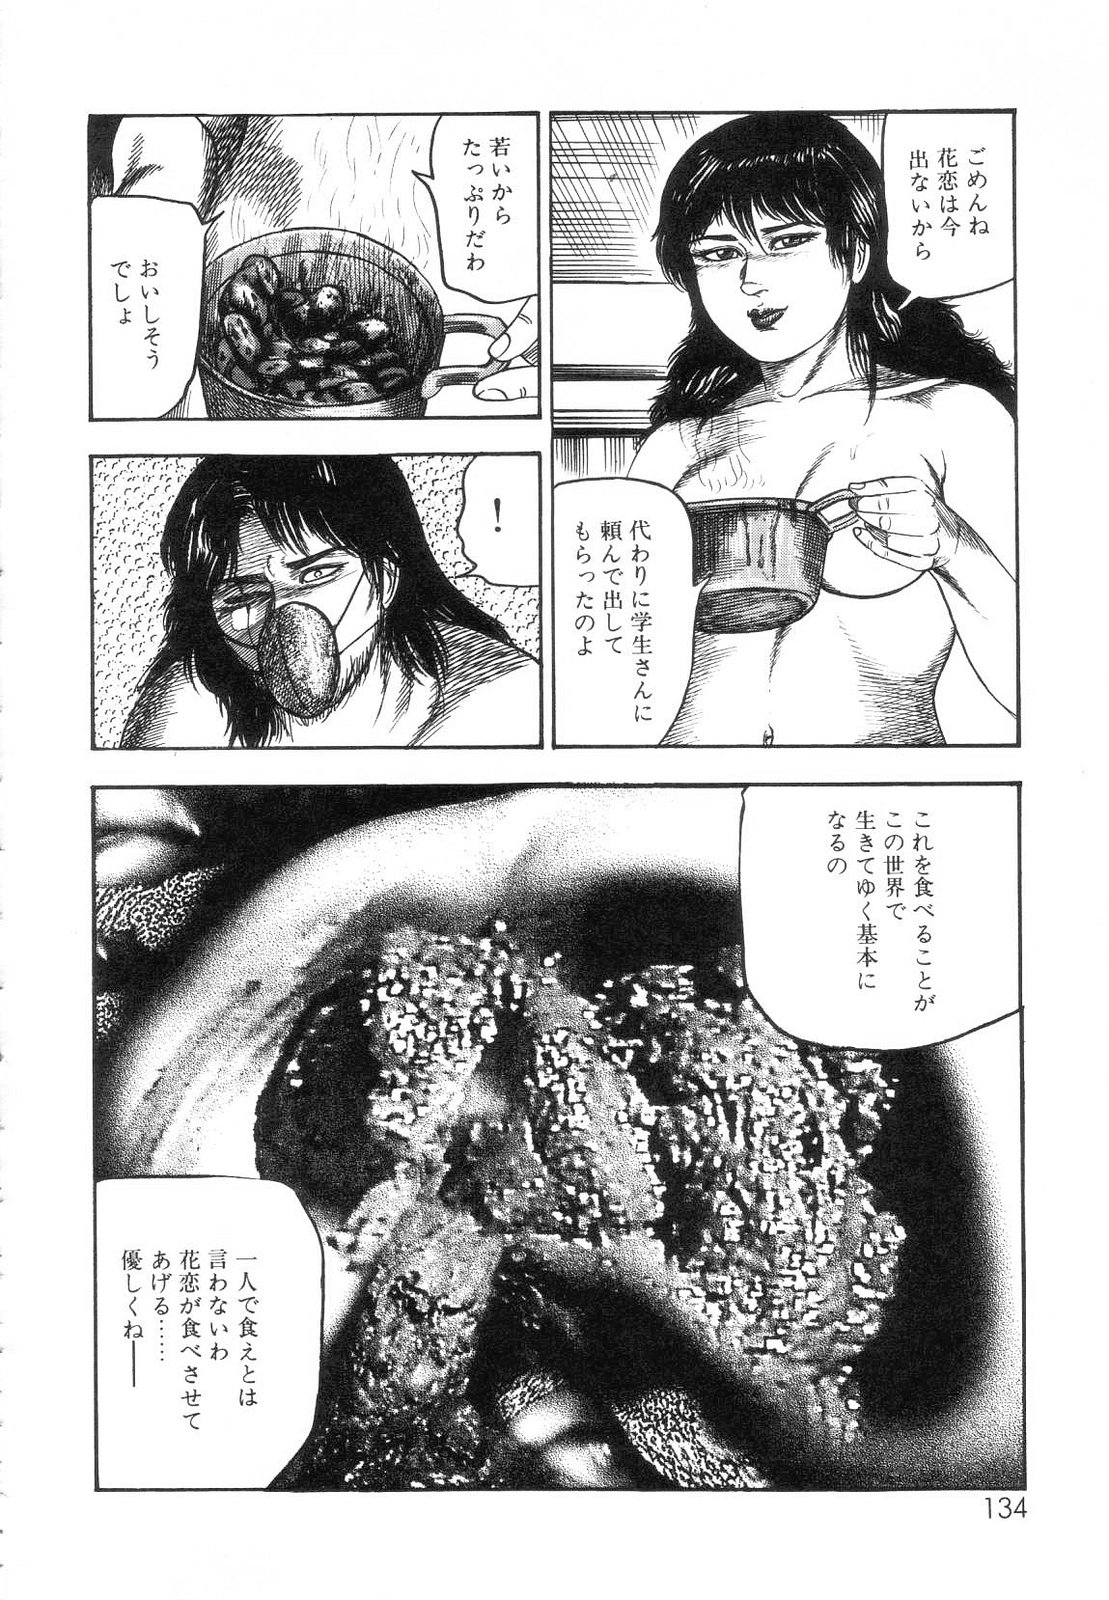 [Sanjou Tomomi] Shiro no Mokushiroku Vol. 7 - Shiiku Ningyou Erika no Shou 135